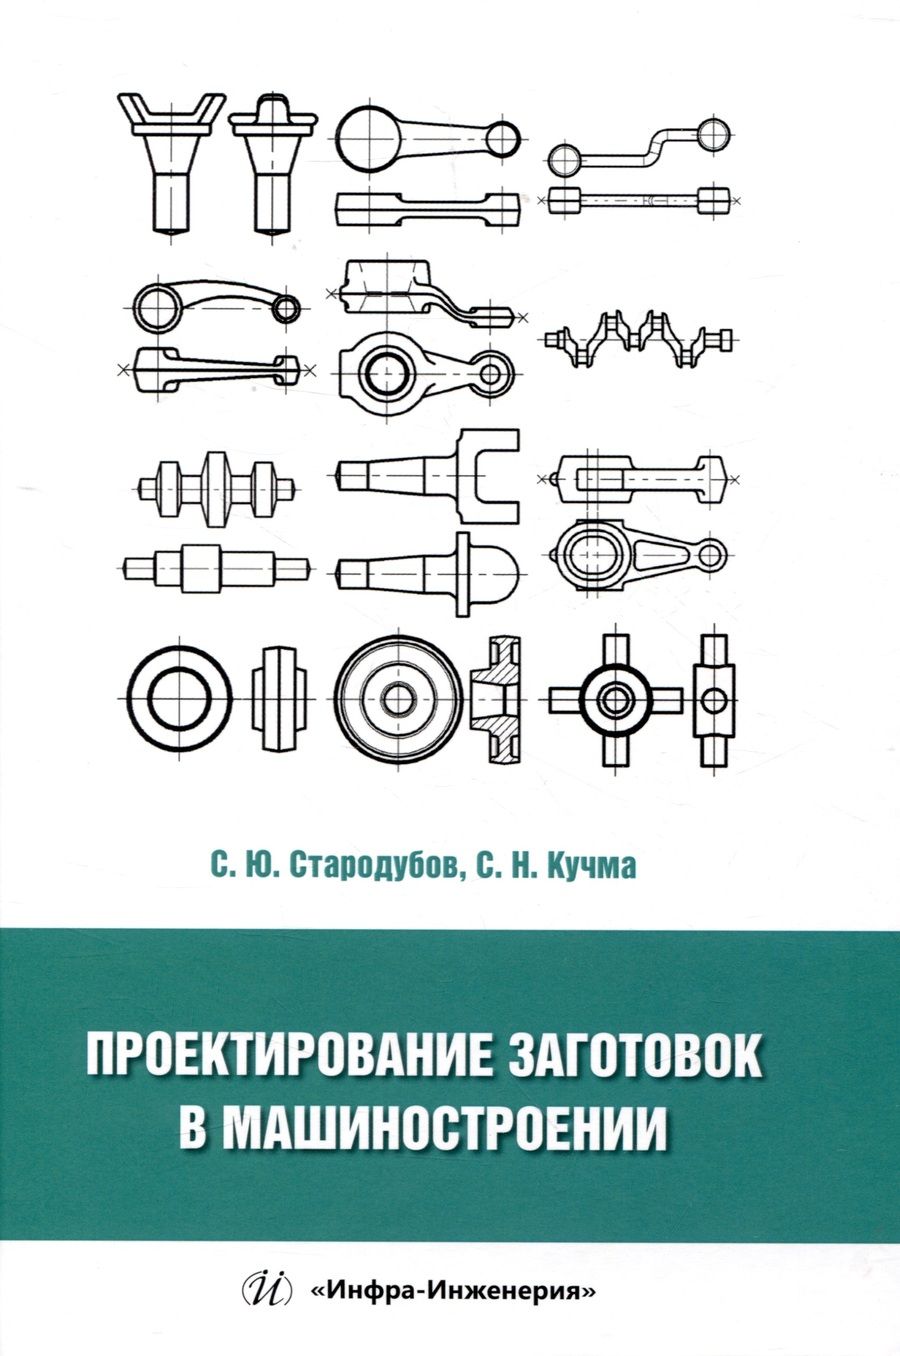 Обложка книги "Стародубов, Кучма: Проектирование заготовок в машиностроении. Учебное пособие"